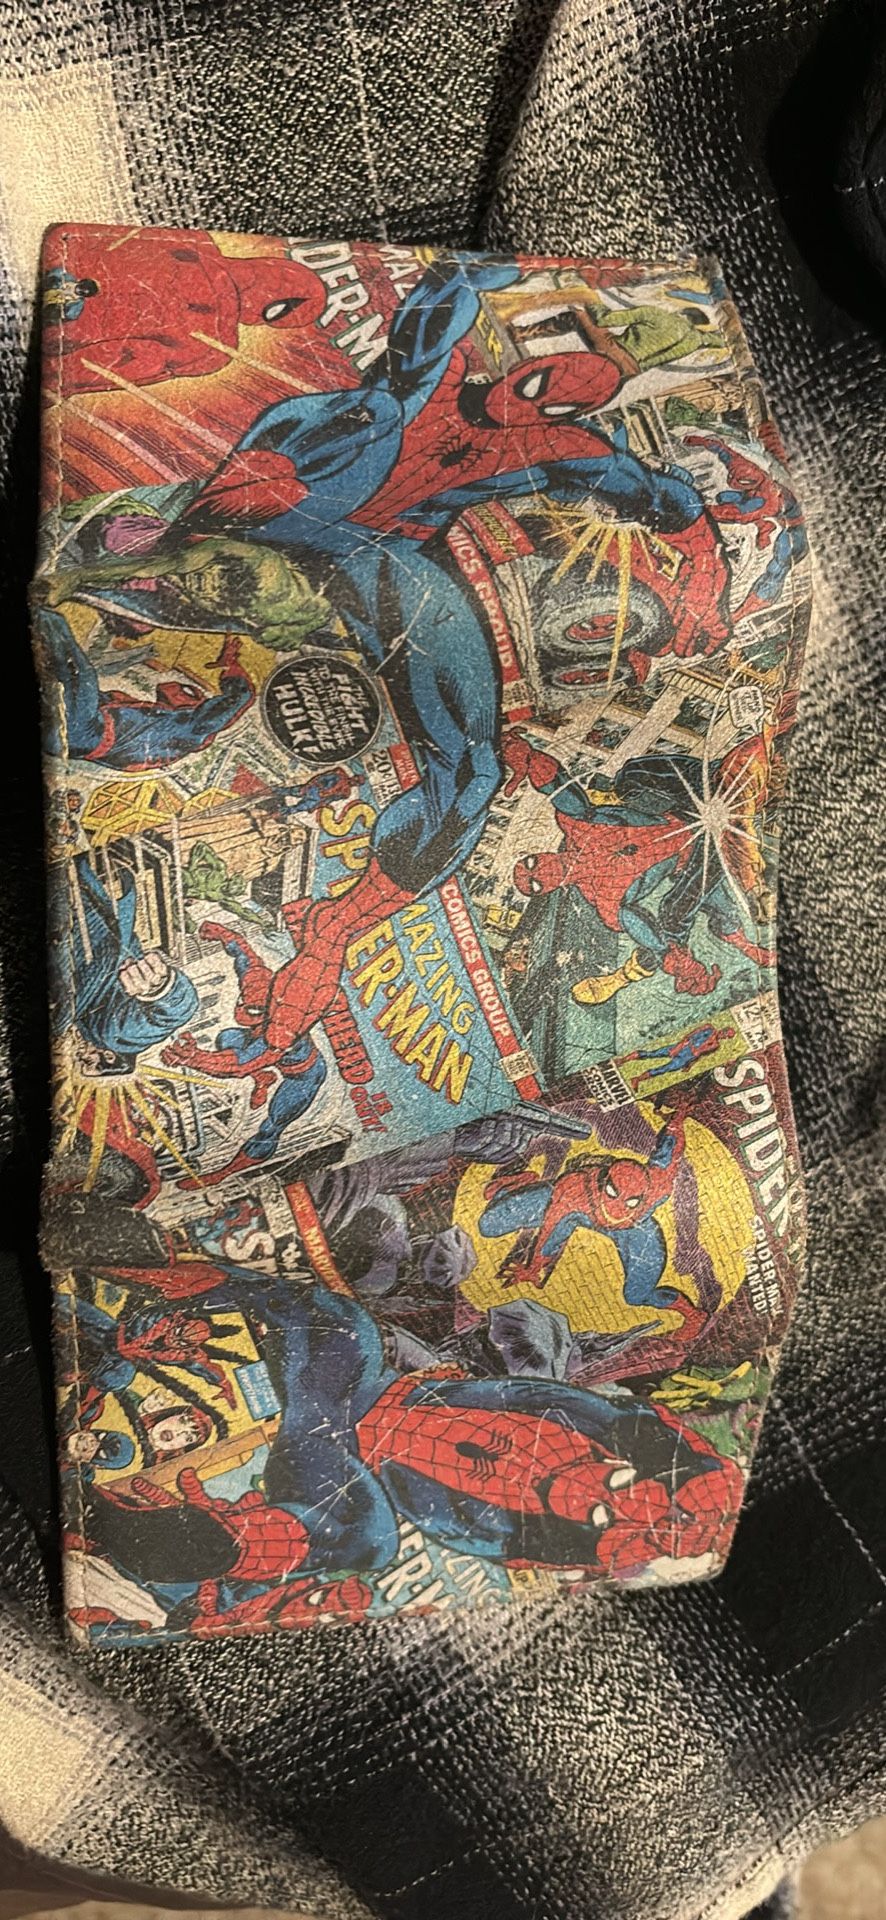 Spider-Man Wallet 